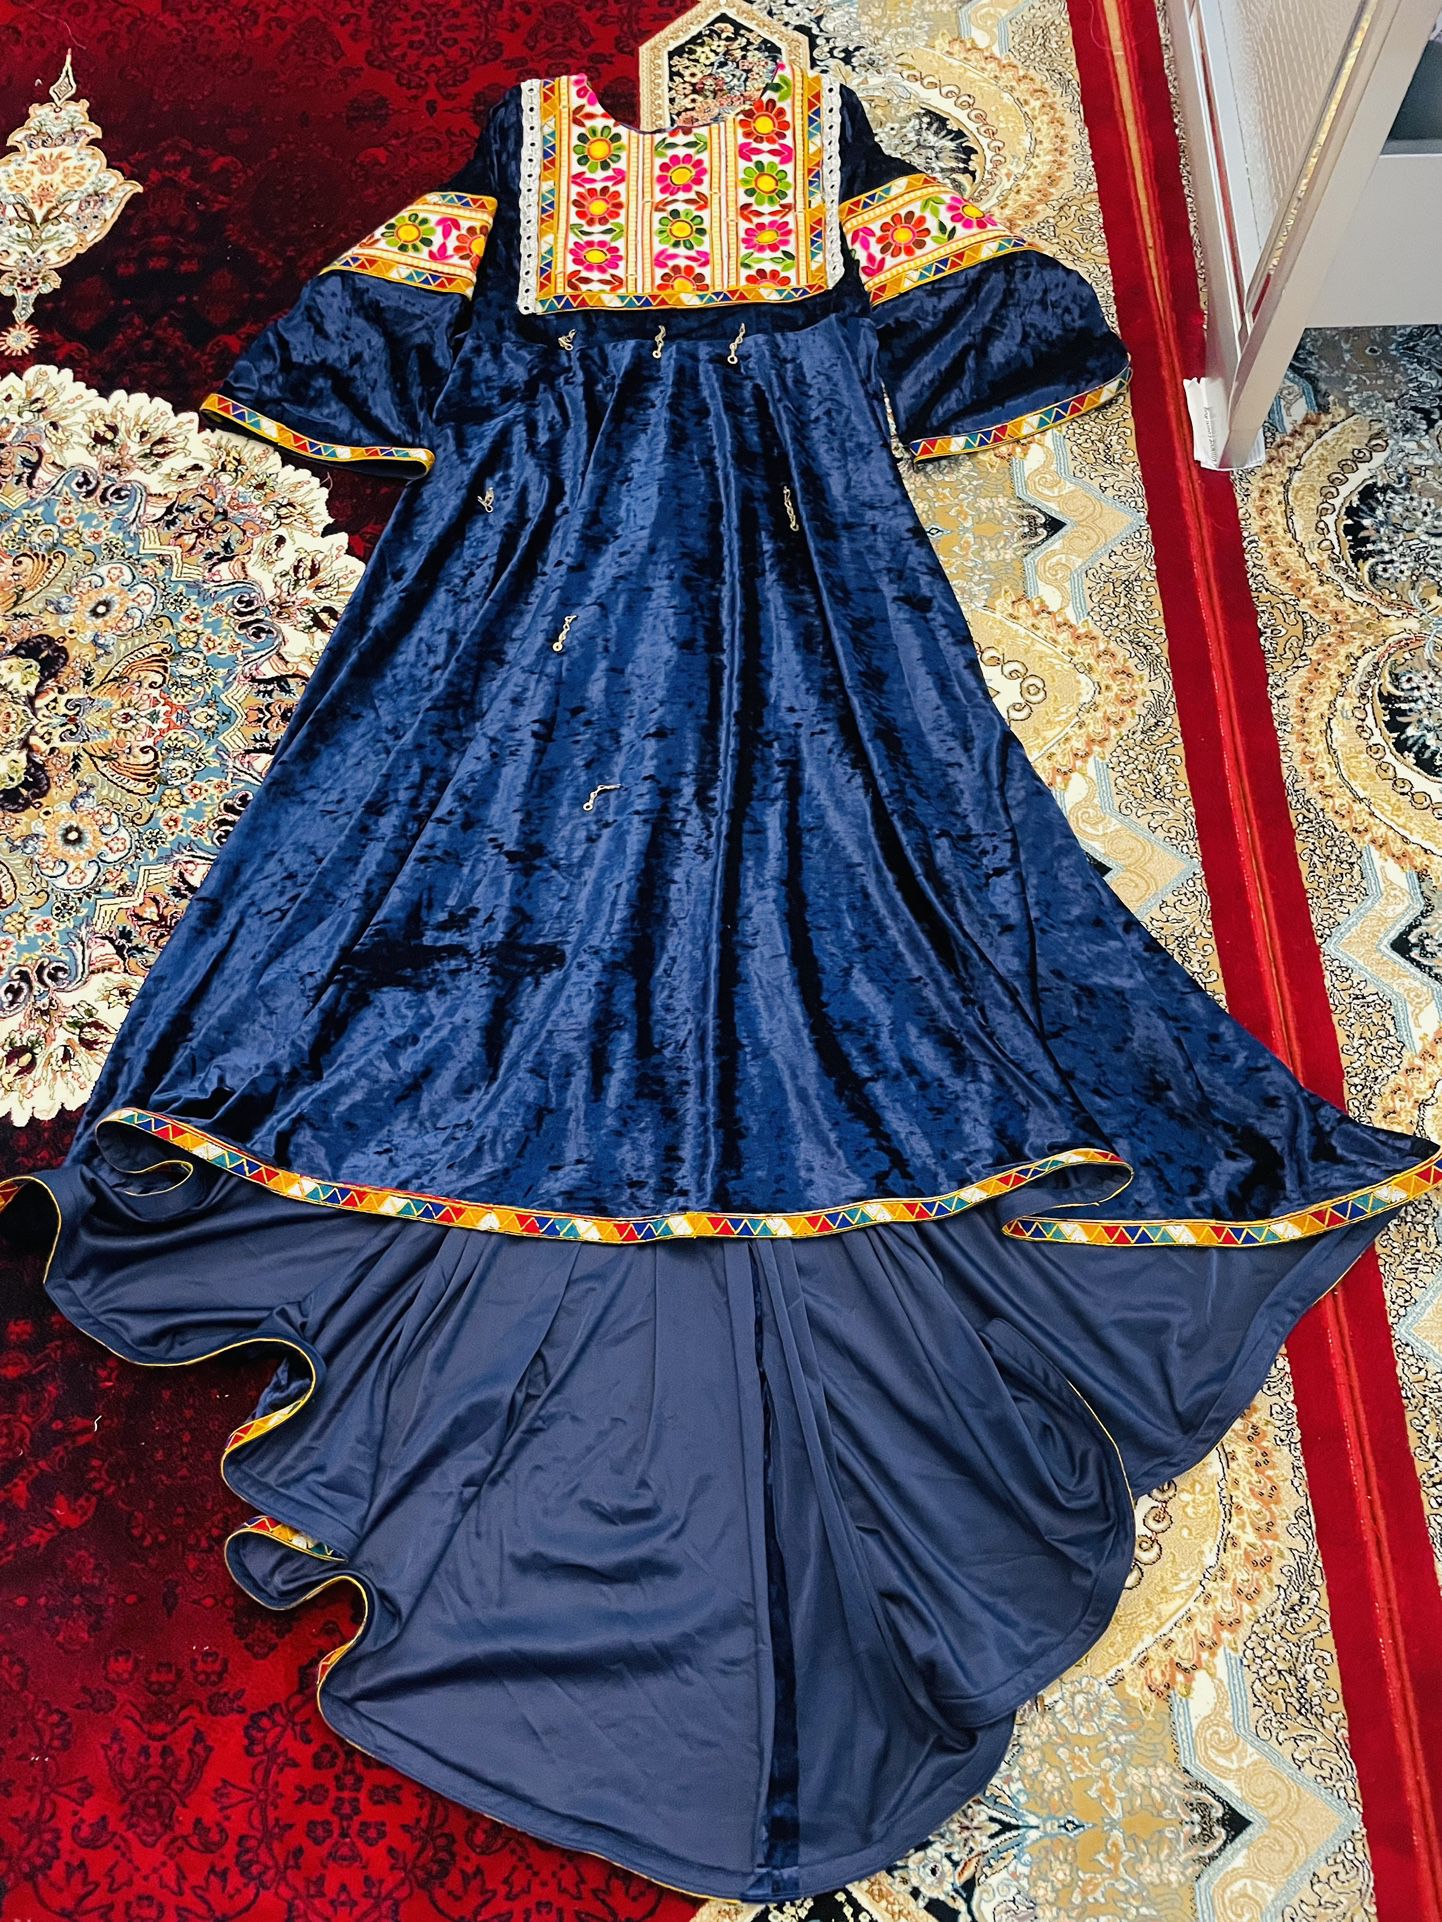 Afghani Long Dress